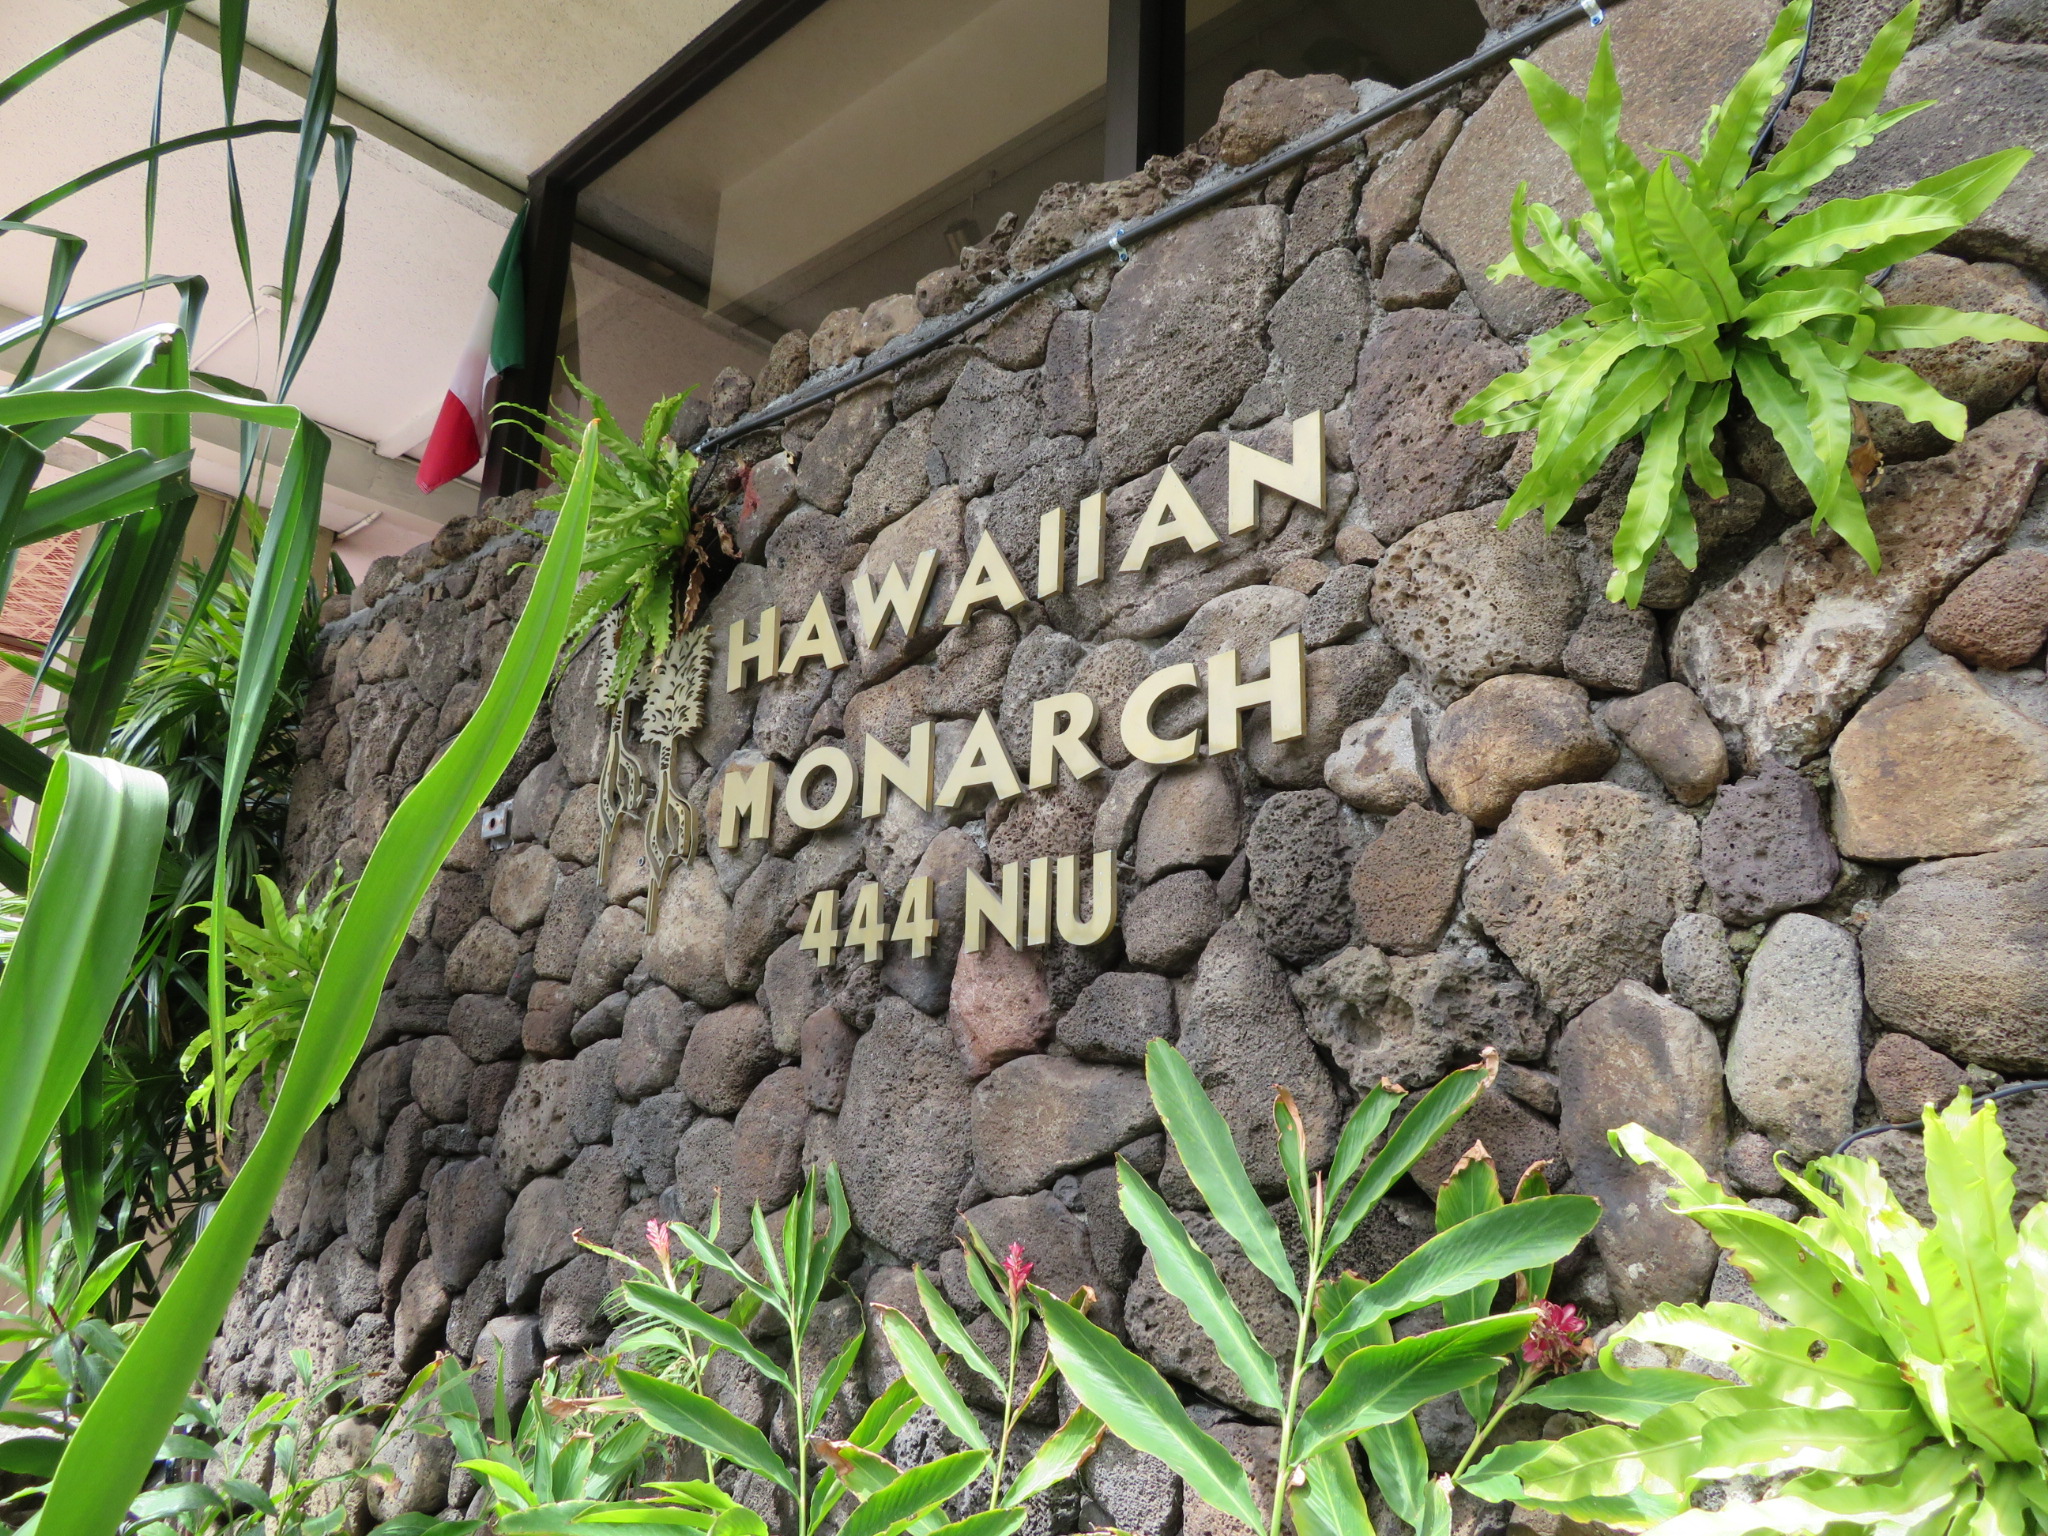 ハワイアン・モナーク / Hawaiian Monarch